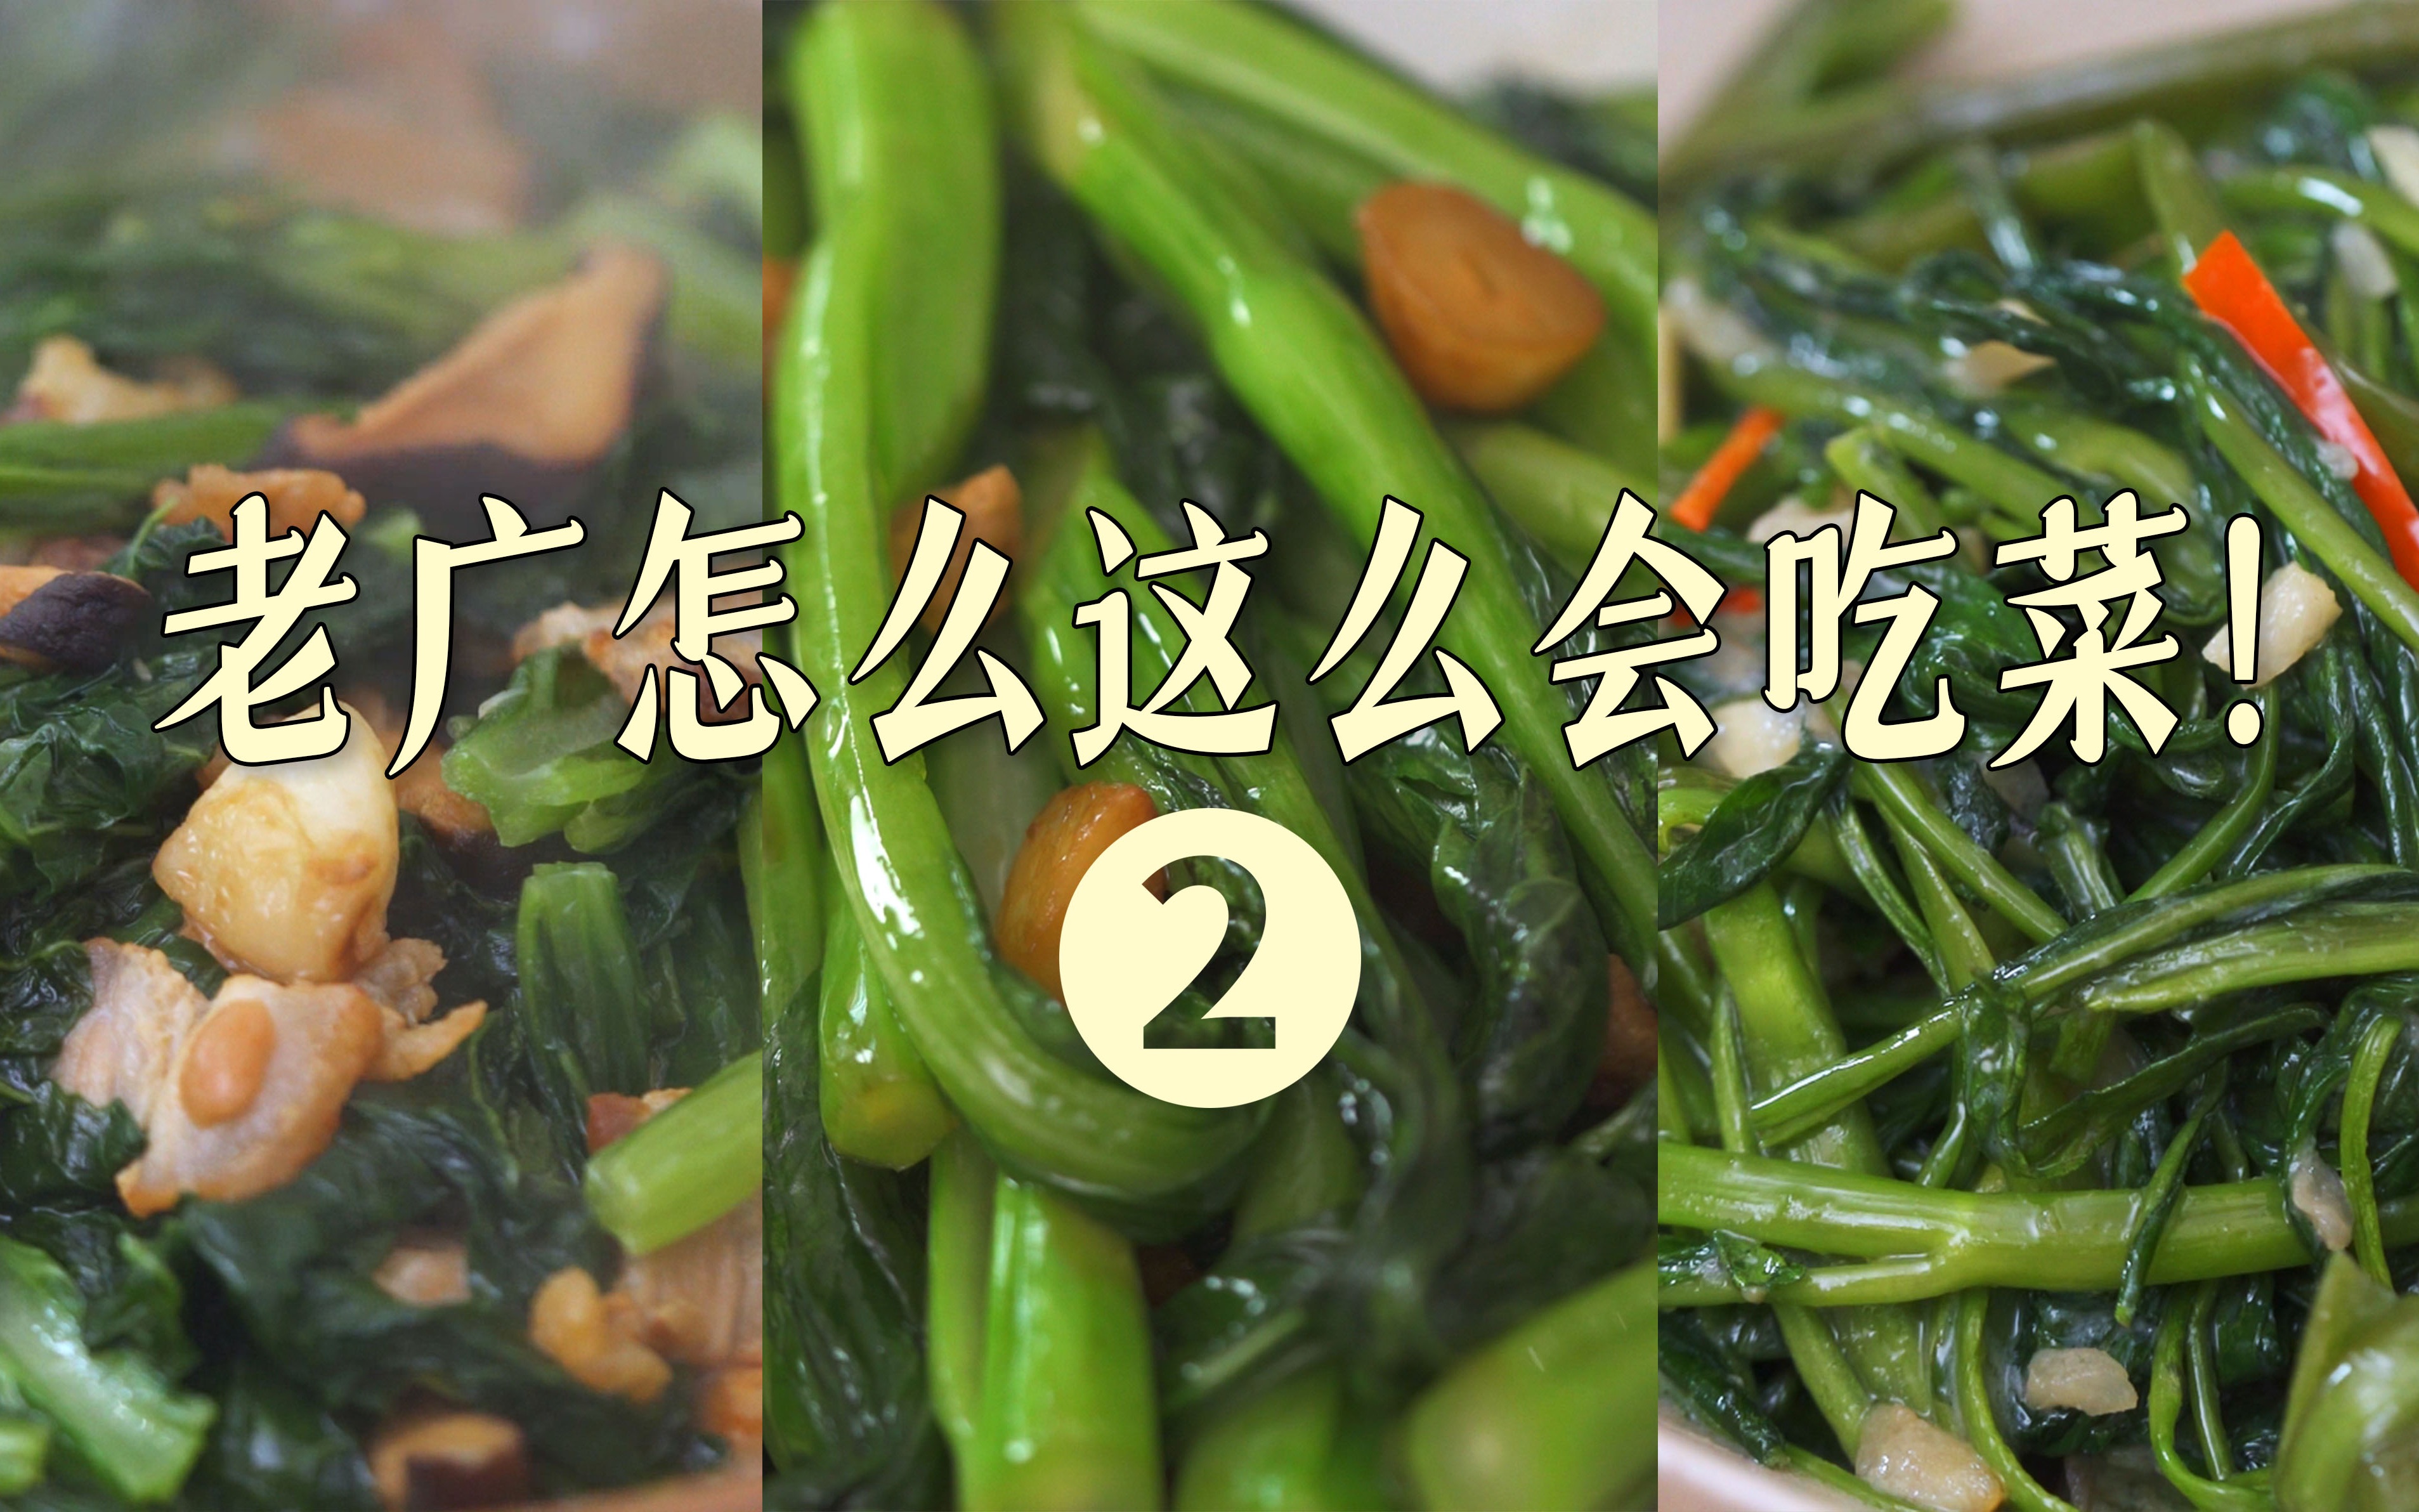 椒絲腐乳炒通菜食譜、做法 | 鐵朗的Cook1Cook食譜分享